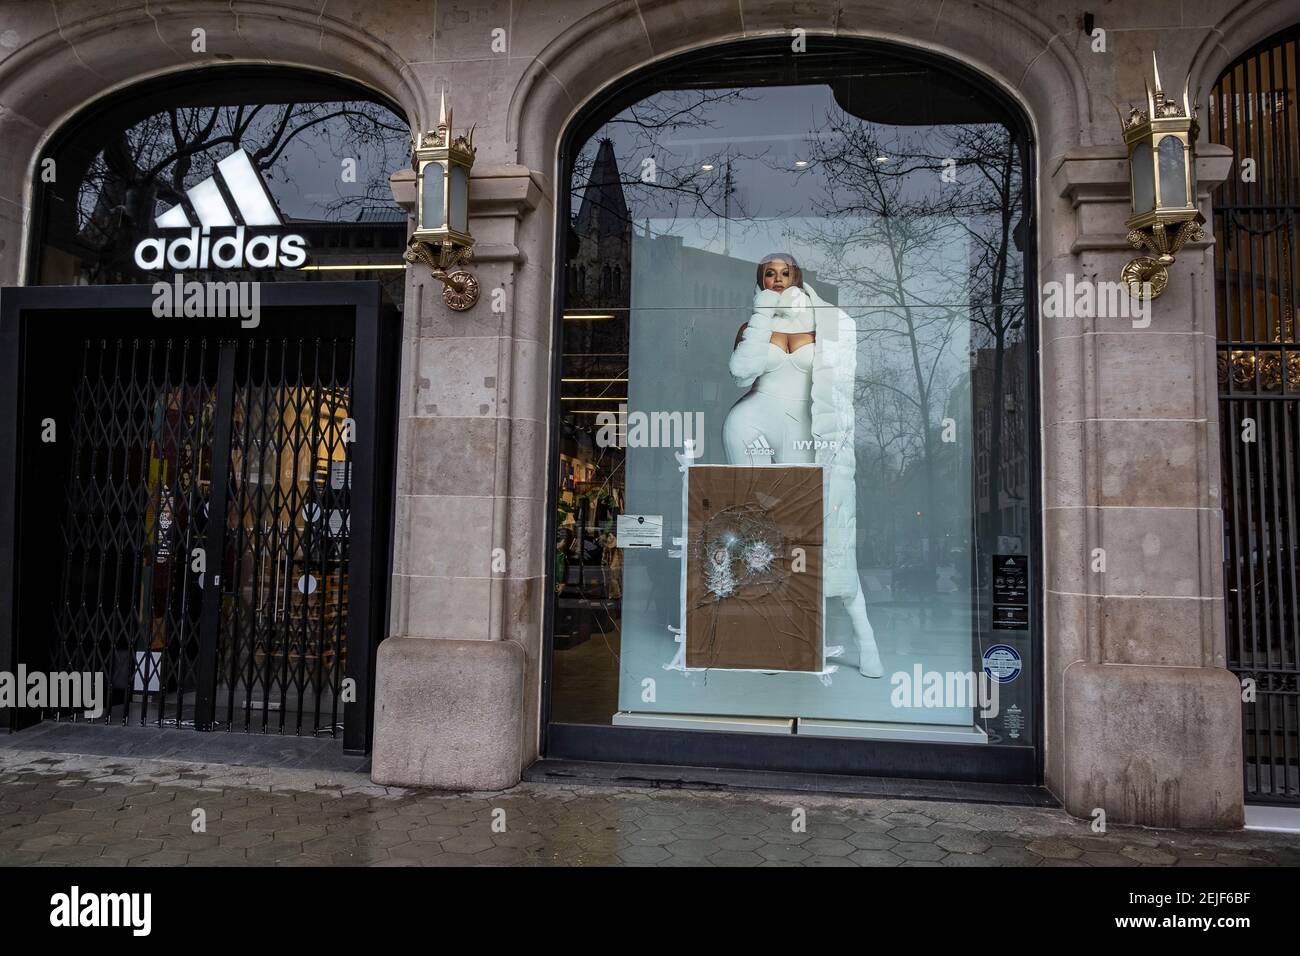 Barcelona, España. 22 de febrero de 2021. La tienda Adidas en el Passeig de  Gràcia se ve con un daño en su ventana.más de 50 tiendas han sufrido daños  en sus escaparates